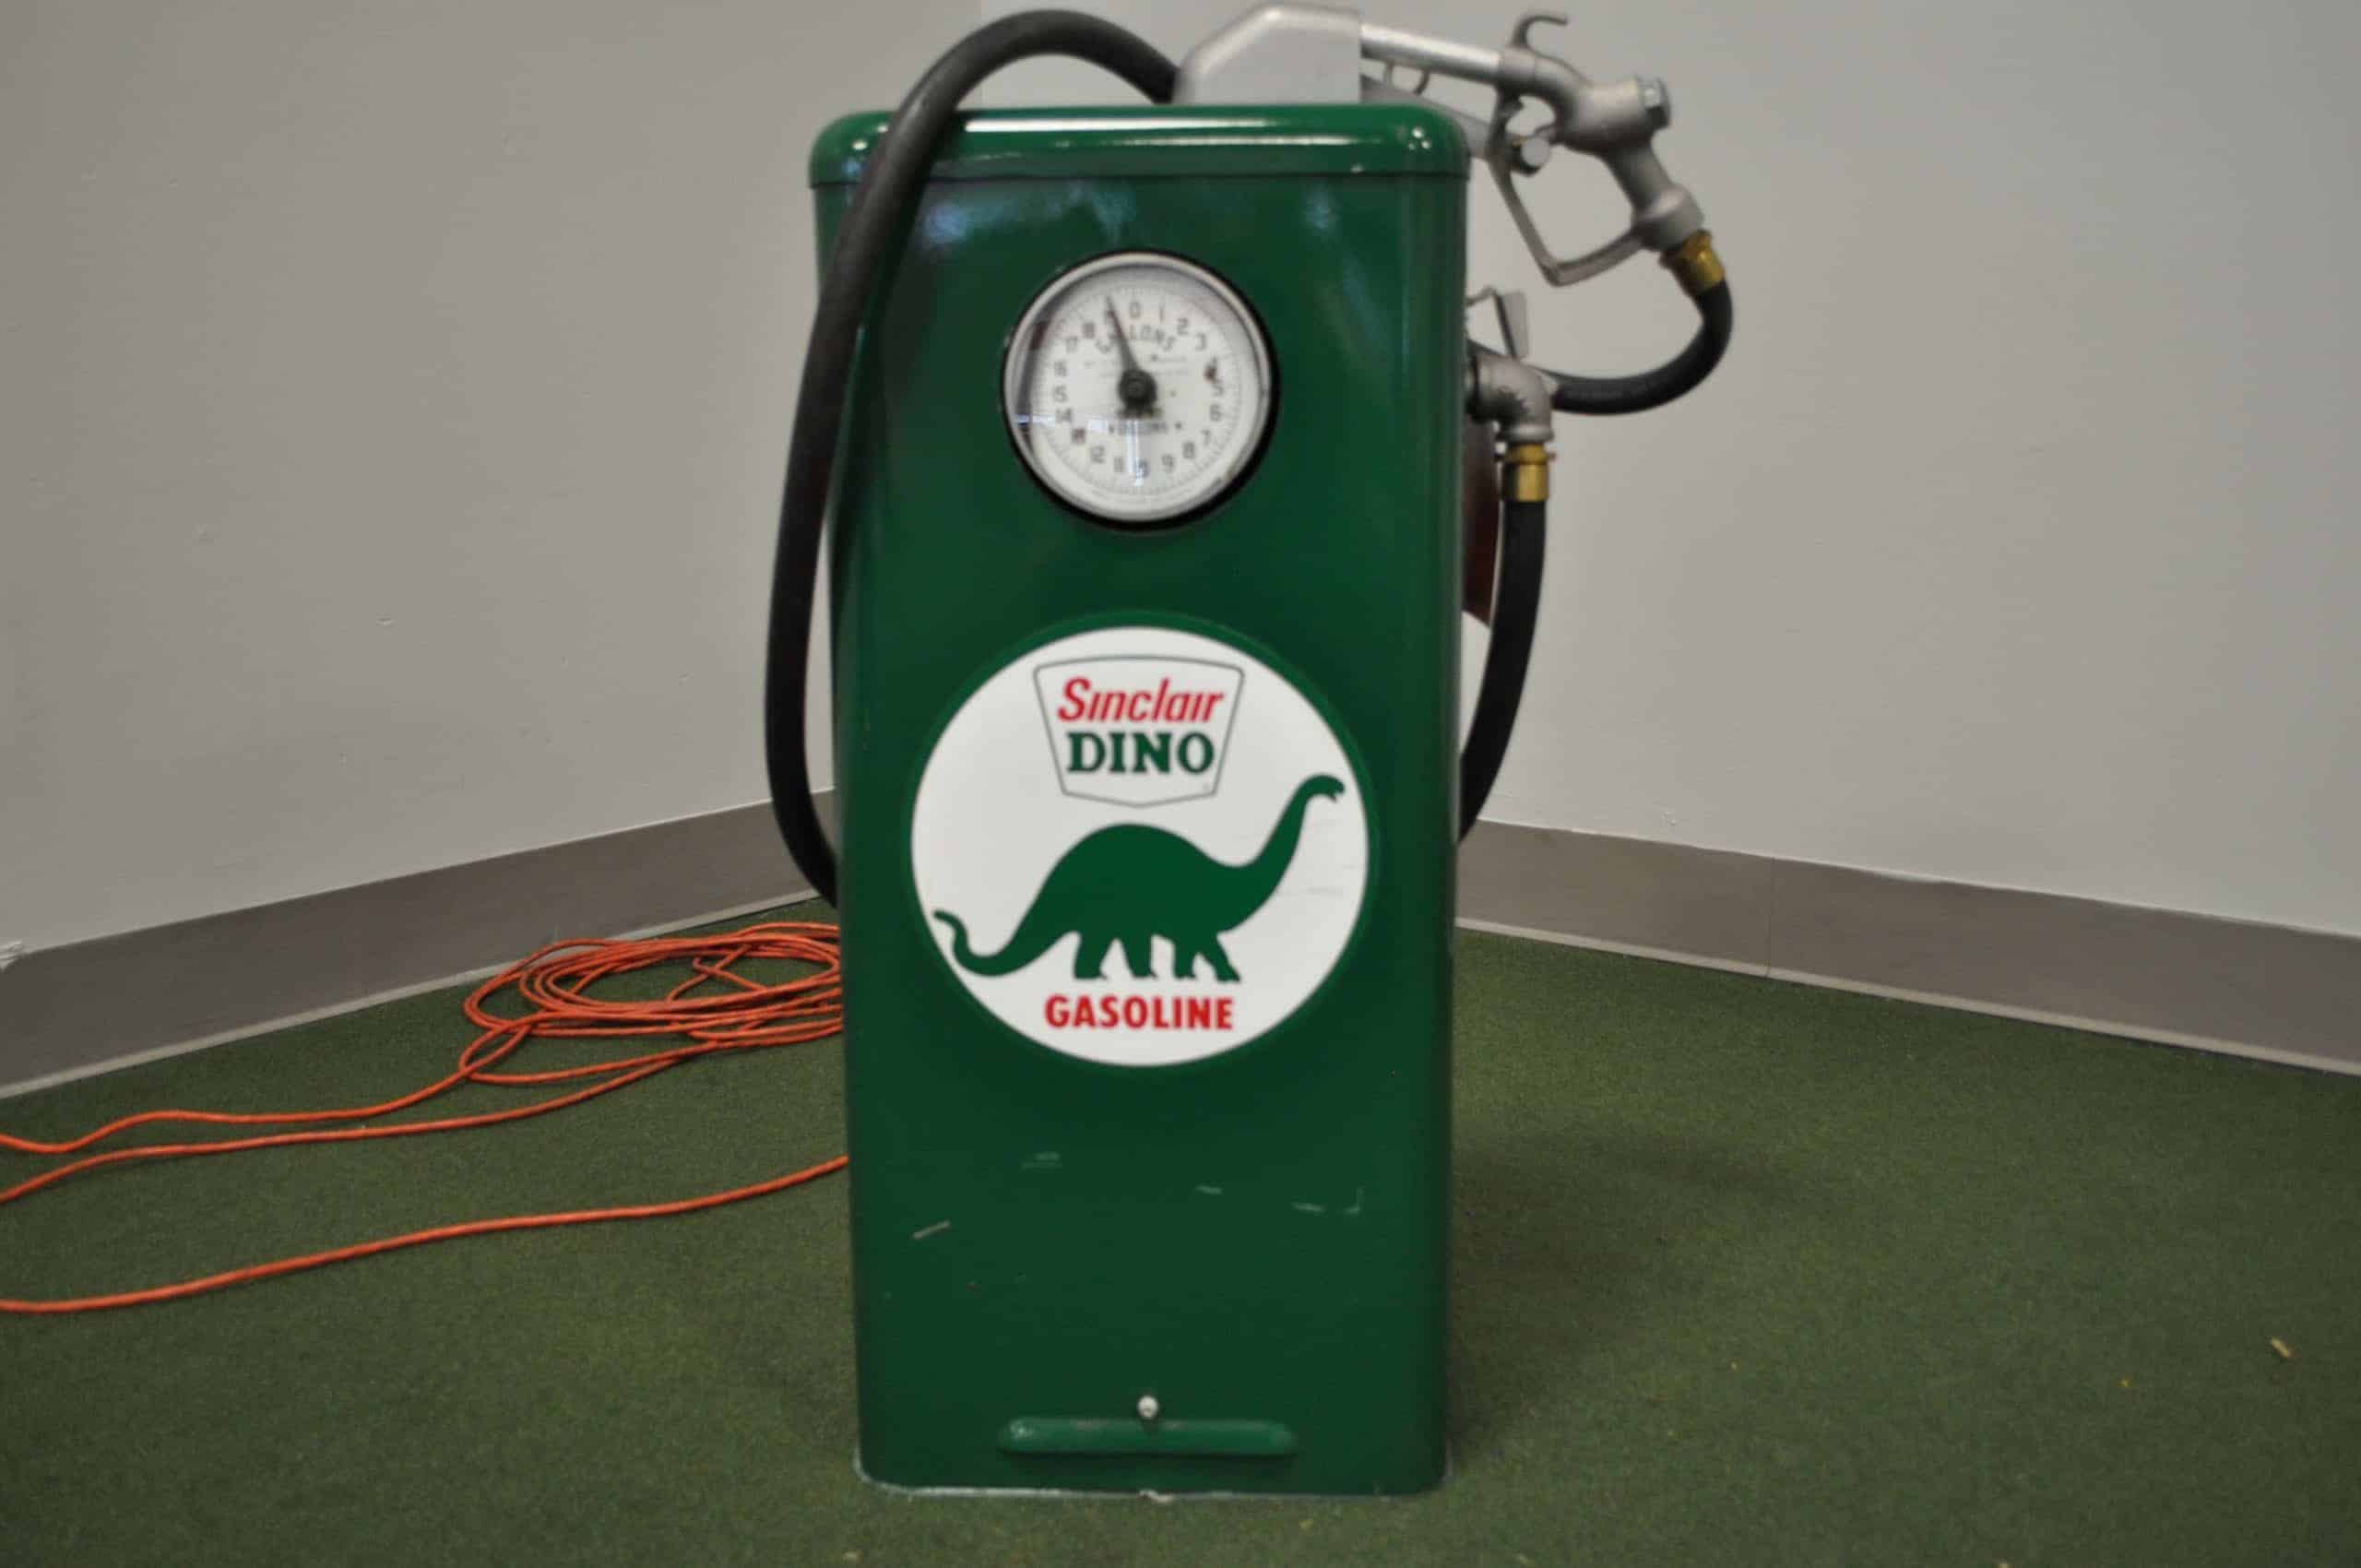 Sinclair Dino Gas Boy Pump